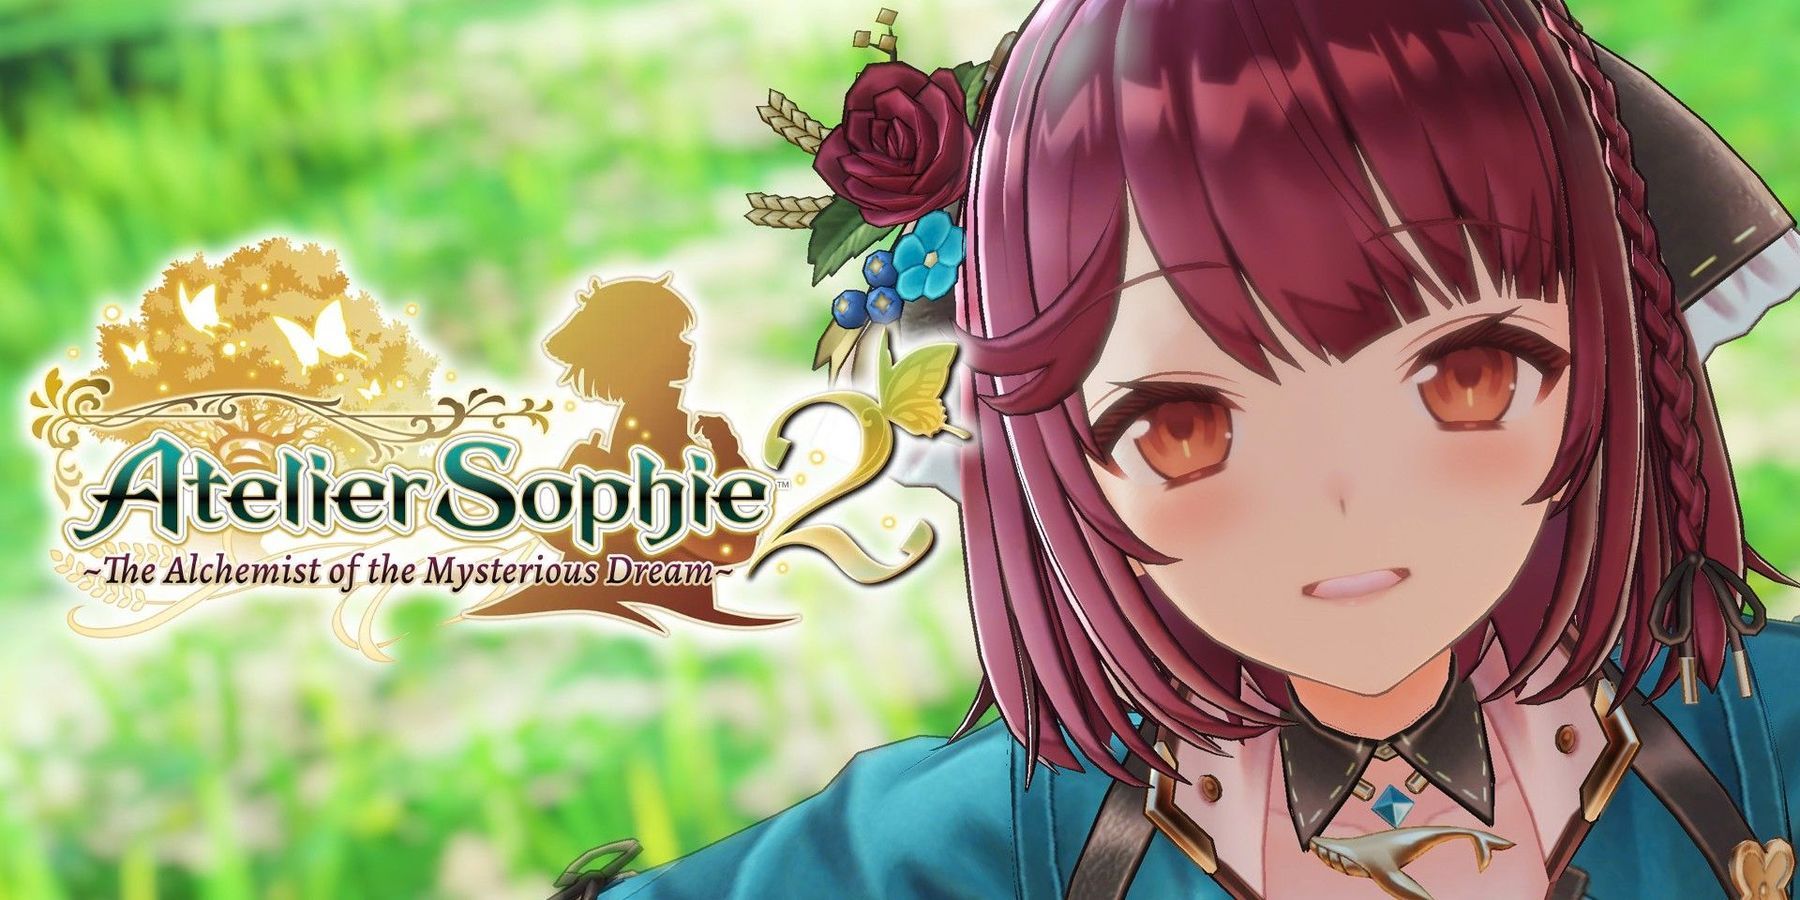 Το Atelier Sophie 2 ανακοινώθηκε επίσημα από την Koei Tecmo με κυκλοφορία τον Φεβρουάριο του 2022